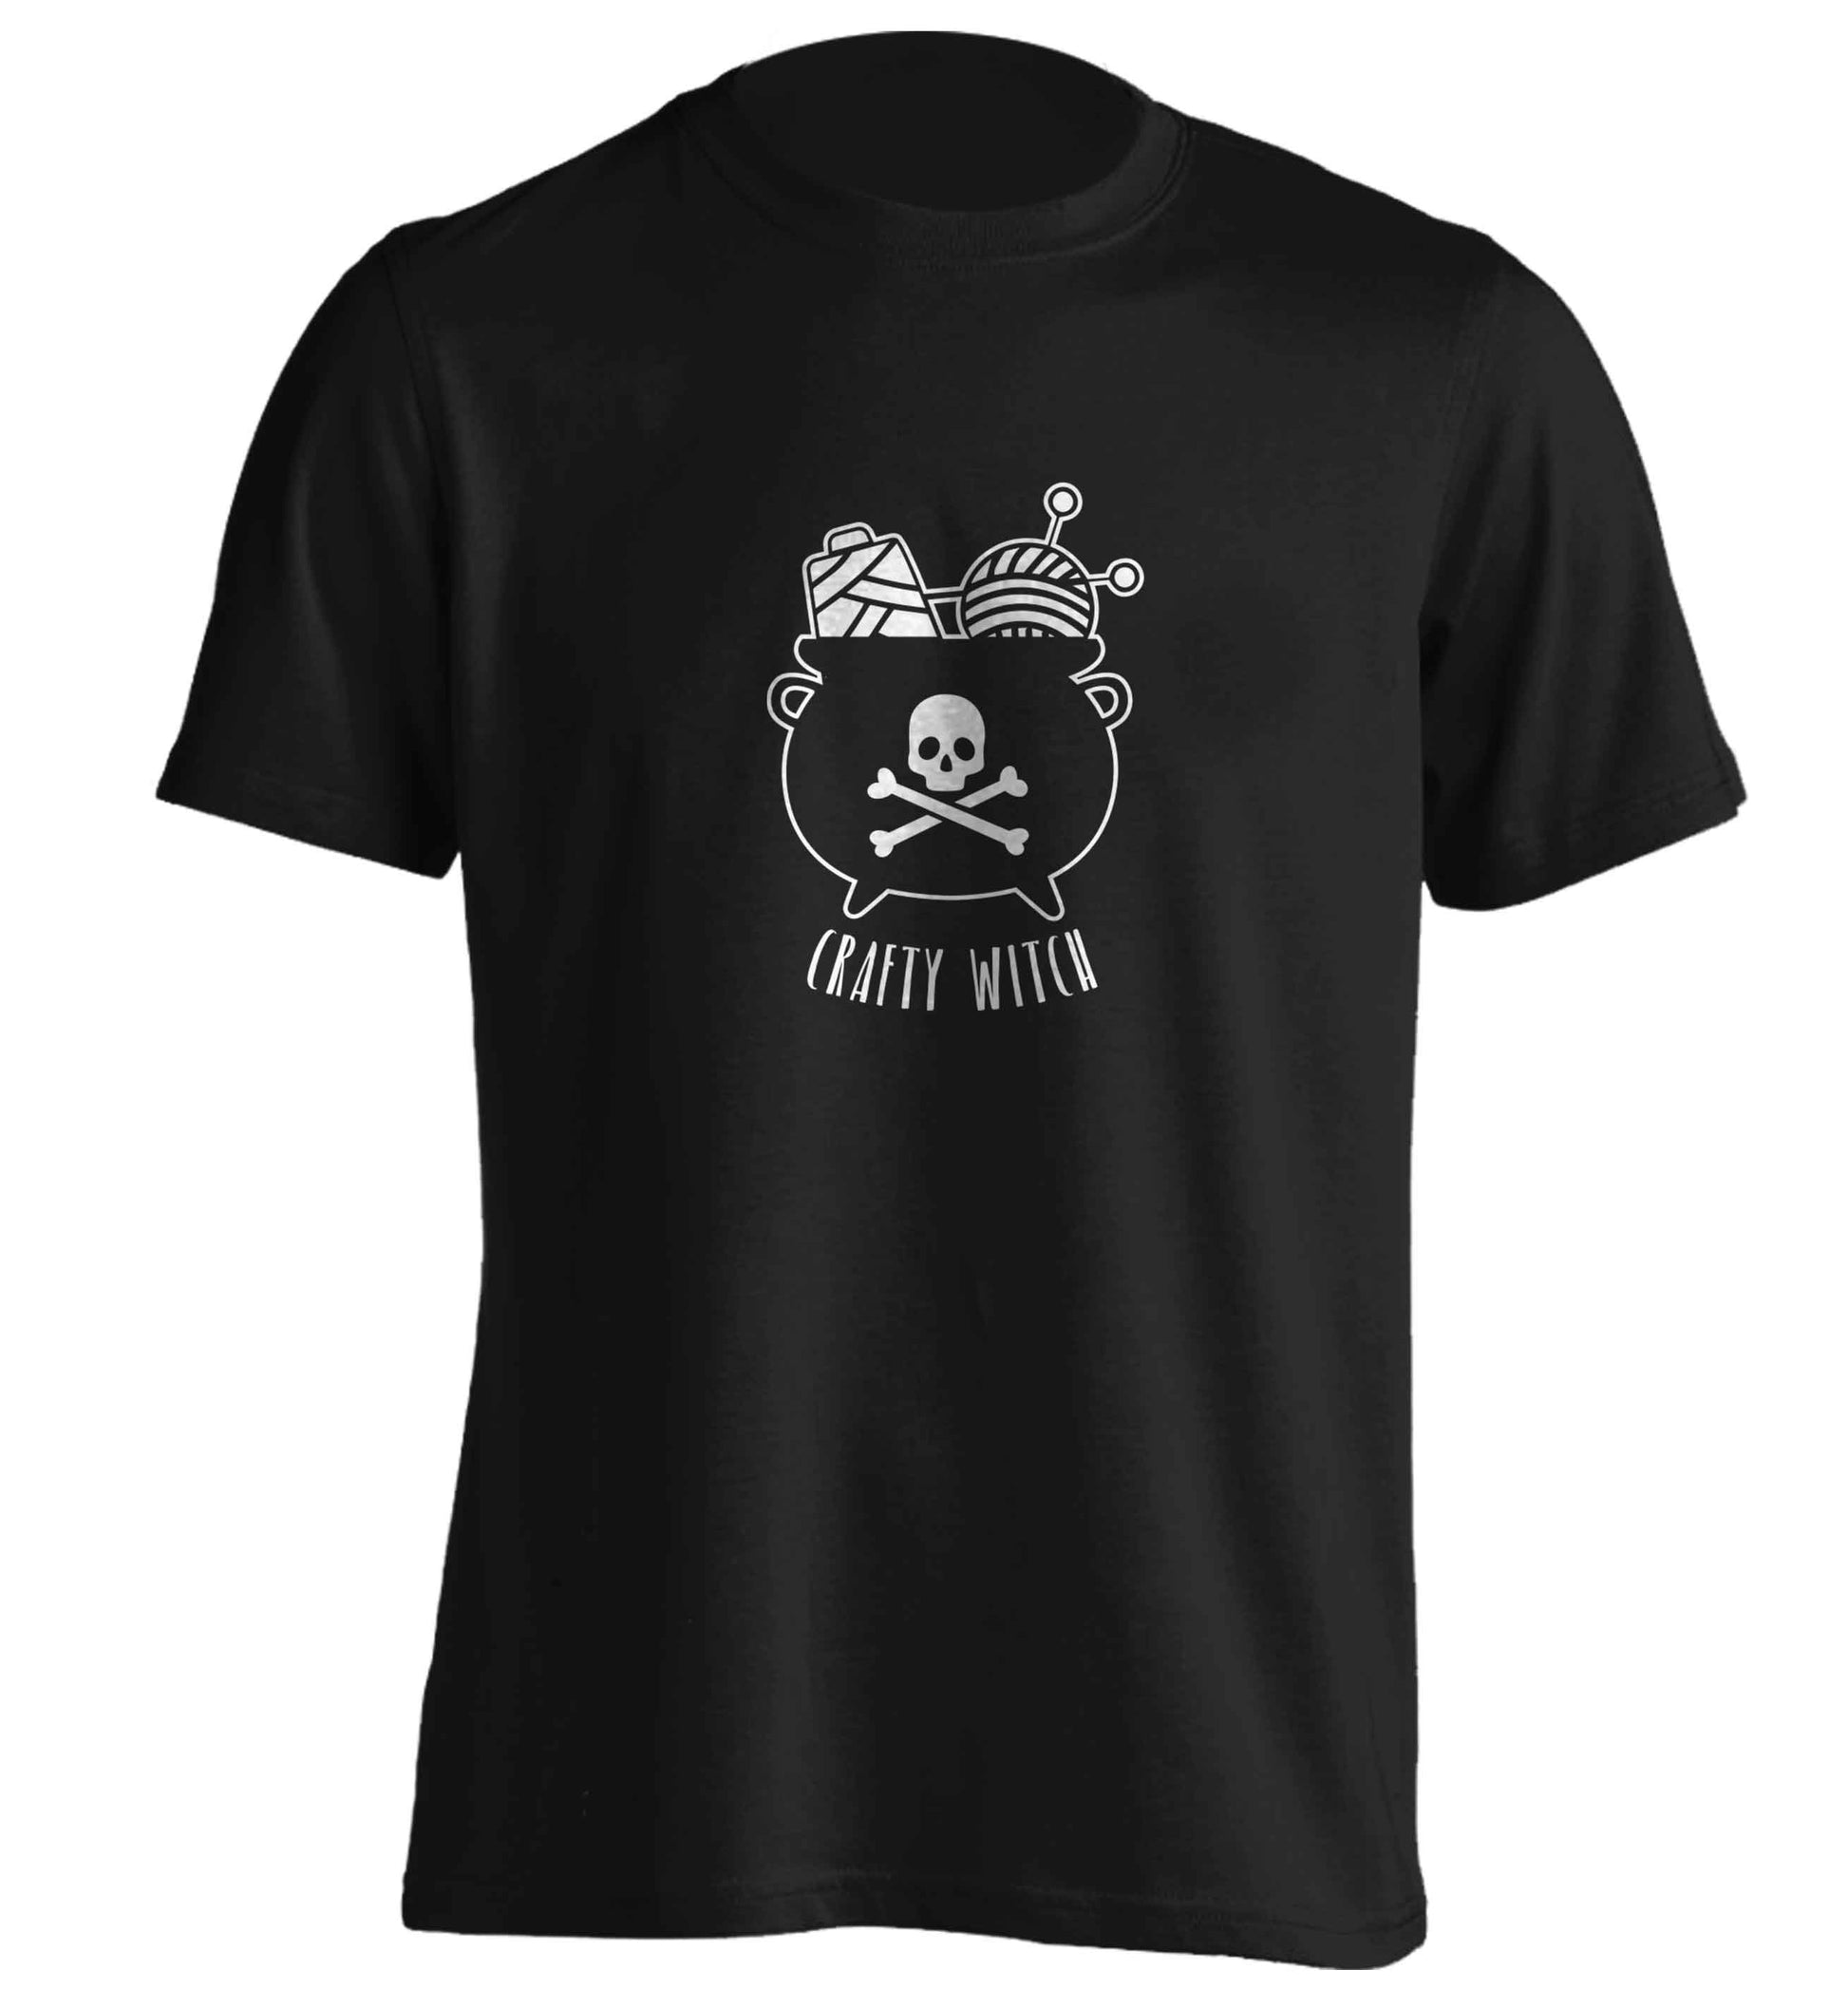 Crafty witch adults unisex black Tshirt 2XL